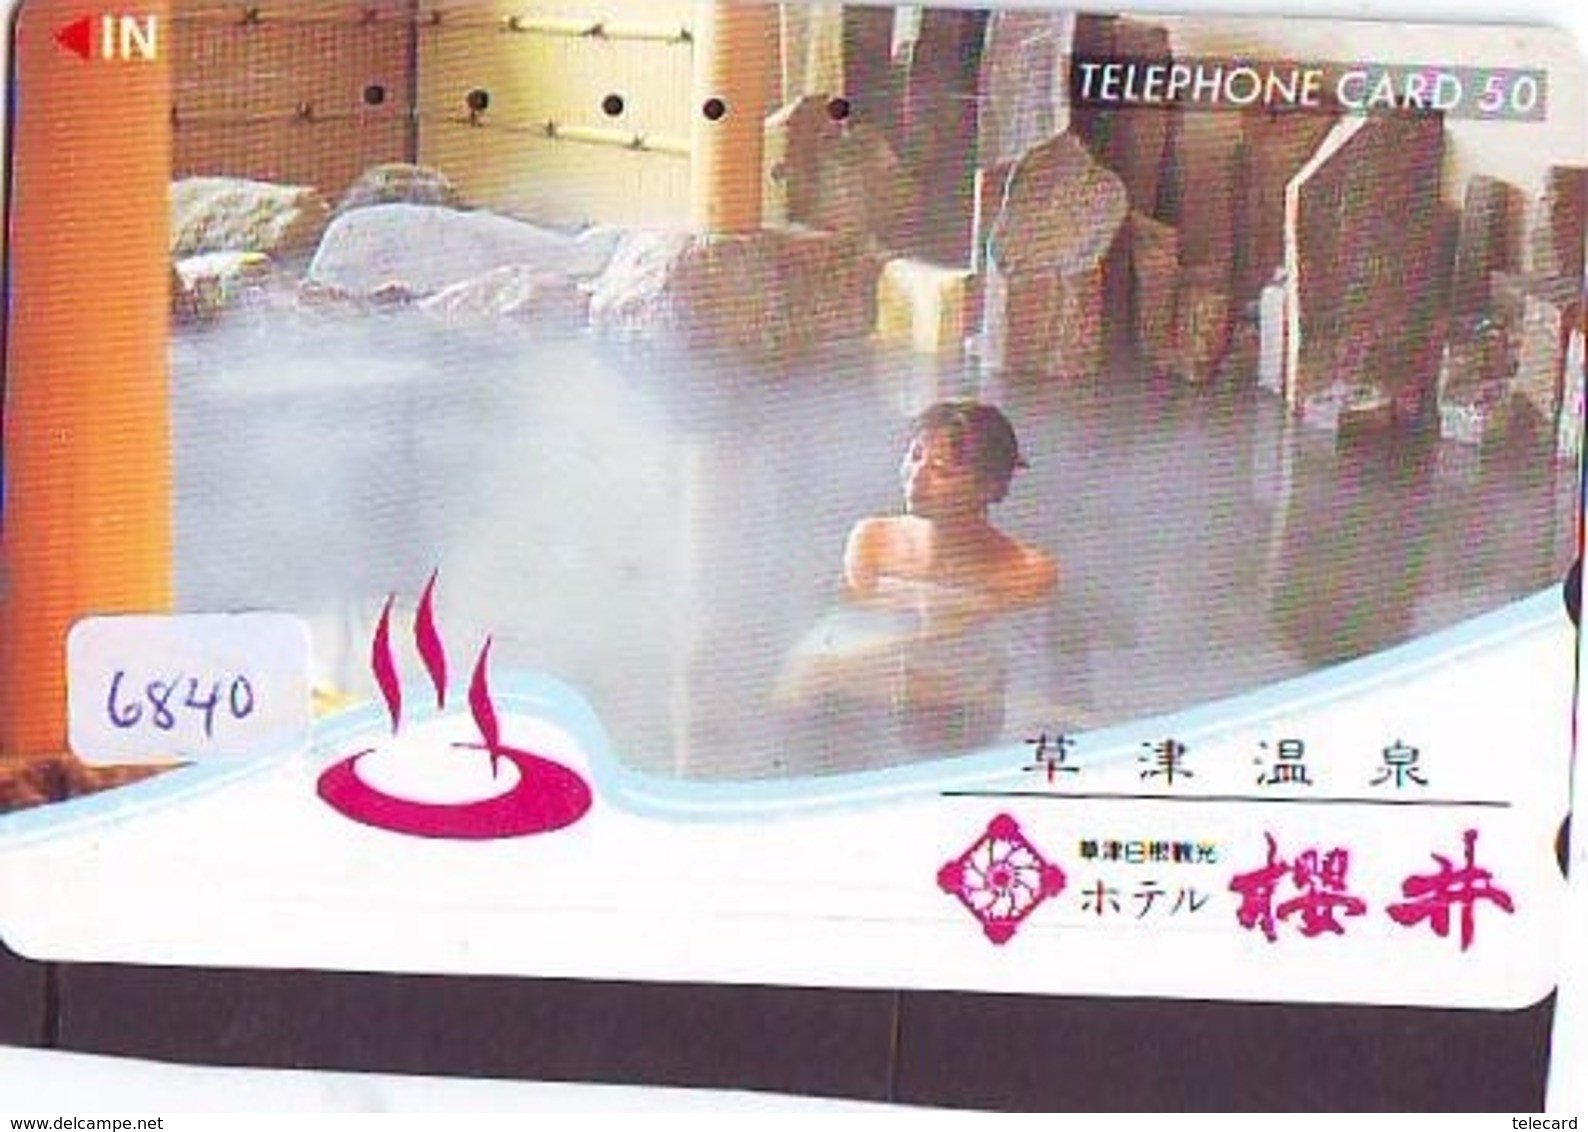 Télécarte Japon * EROTIQUE (6840) DANS LA BAIN *  EROTIC PHONECARD JAPAN * TK * BATHCLOTHES * FEMME SEXY LADY LINGERIE - Mode